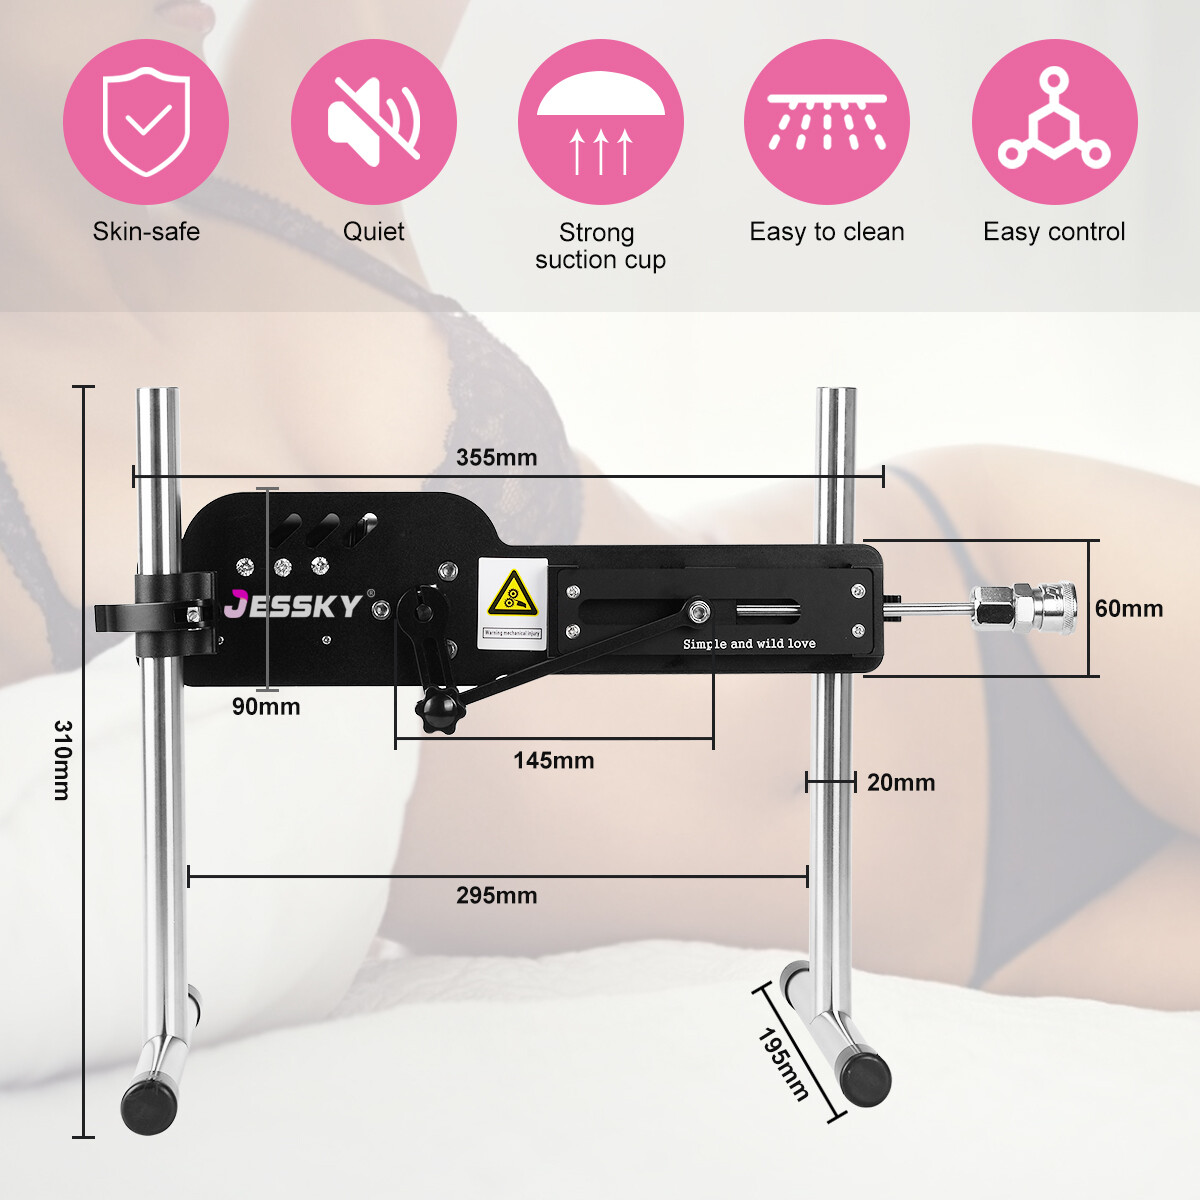 Premium Sexmachine, Erwachsene Sexspielzeuge Mit 5 Aufsätzen Und Schnellanschluss Für Automatisches Stoß- Und Fickvergnügen Für Frauen Und Männer